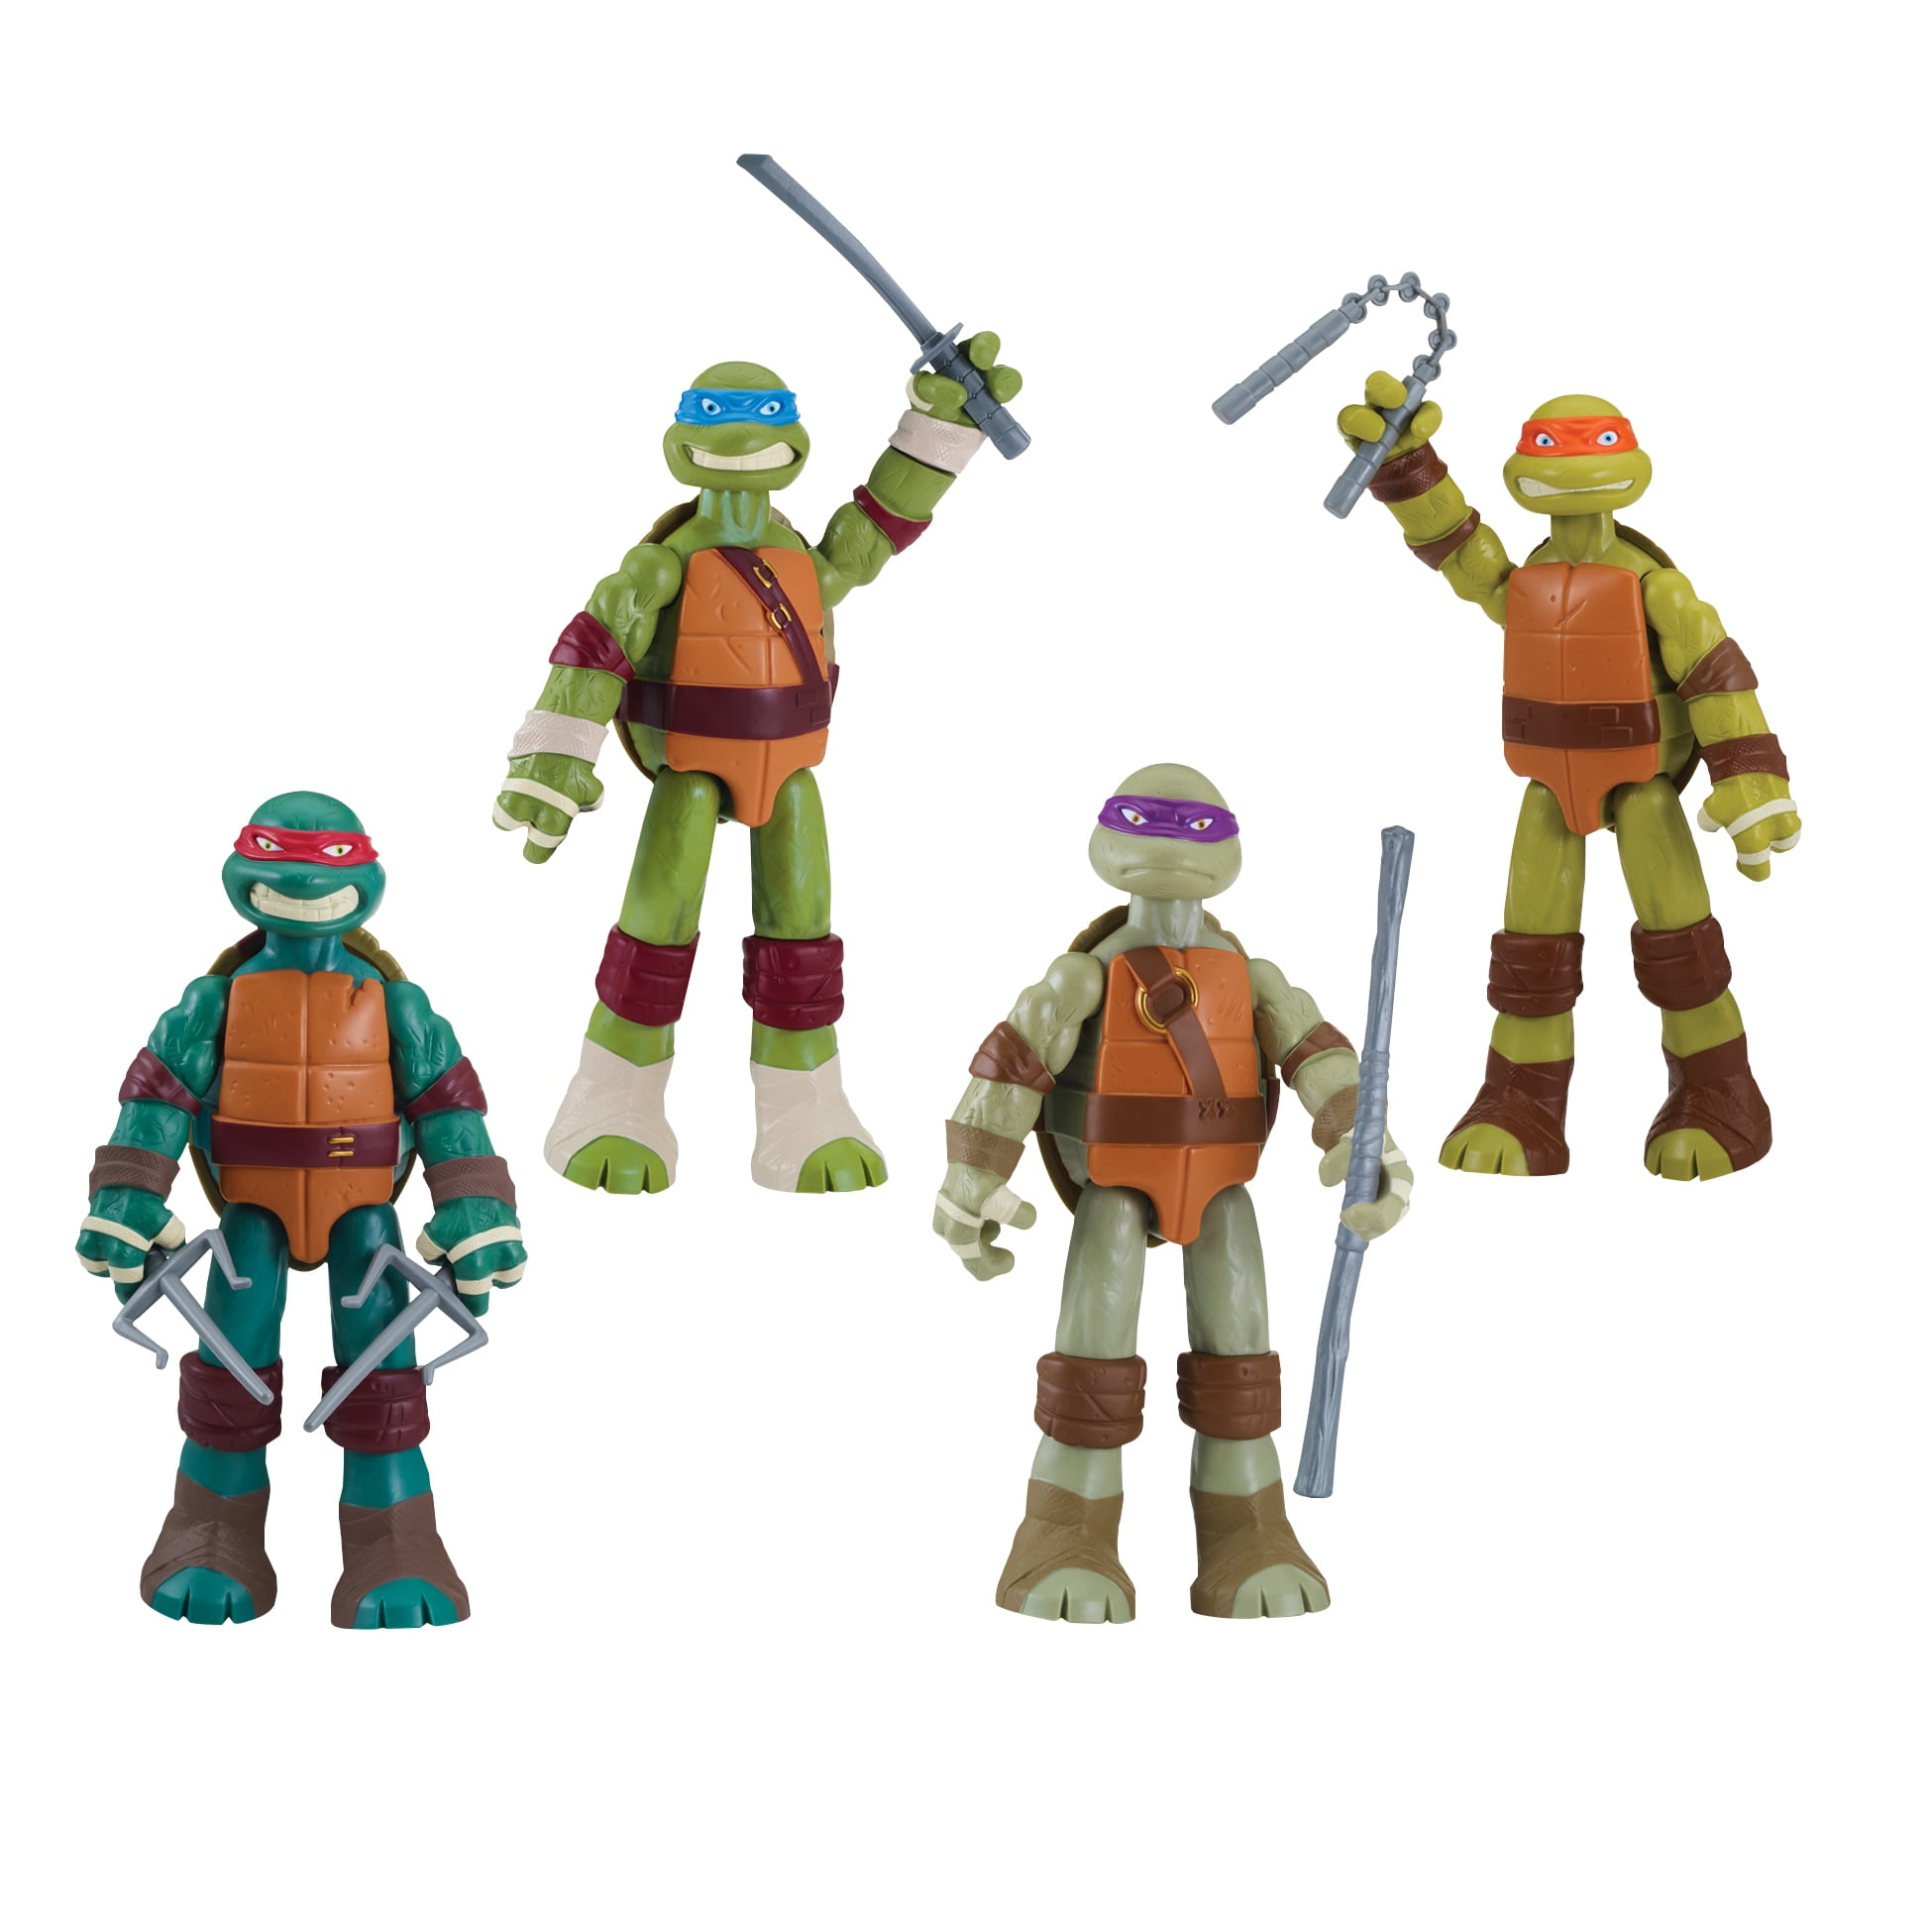 rise of the teenage mutant ninja turtles 4 brothers pack